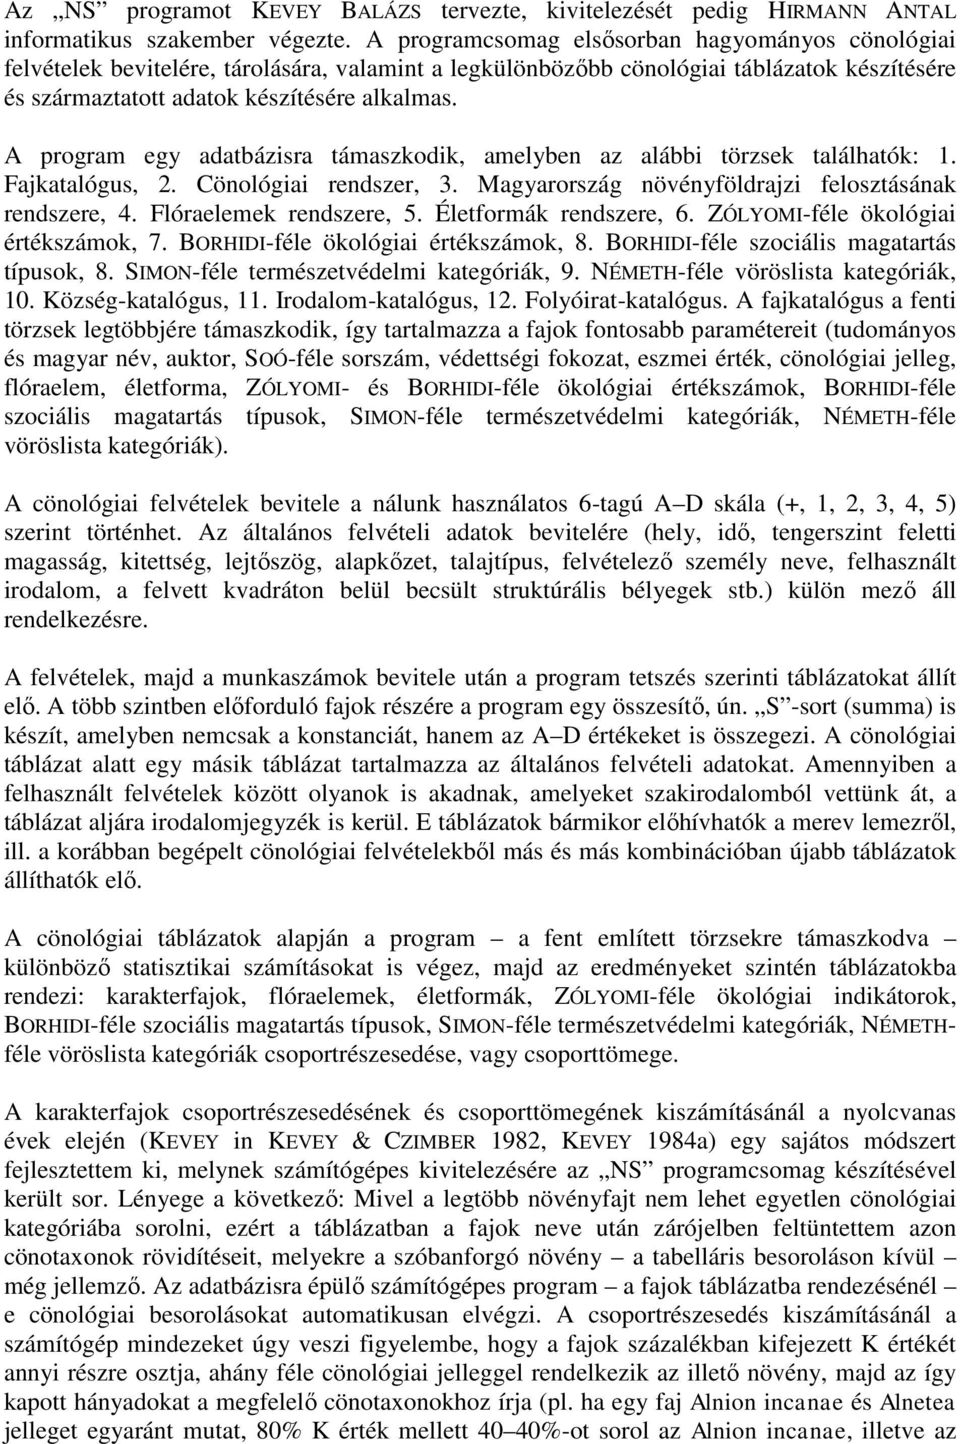 A program egy adatbázisra támaszkodik, amelyben az alábbi törzsek találhatók: 1. Fajkatalógus, 2. Cönológiai rendszer, 3. Magyarország növényföldrajzi felosztásának rendszere, 4.